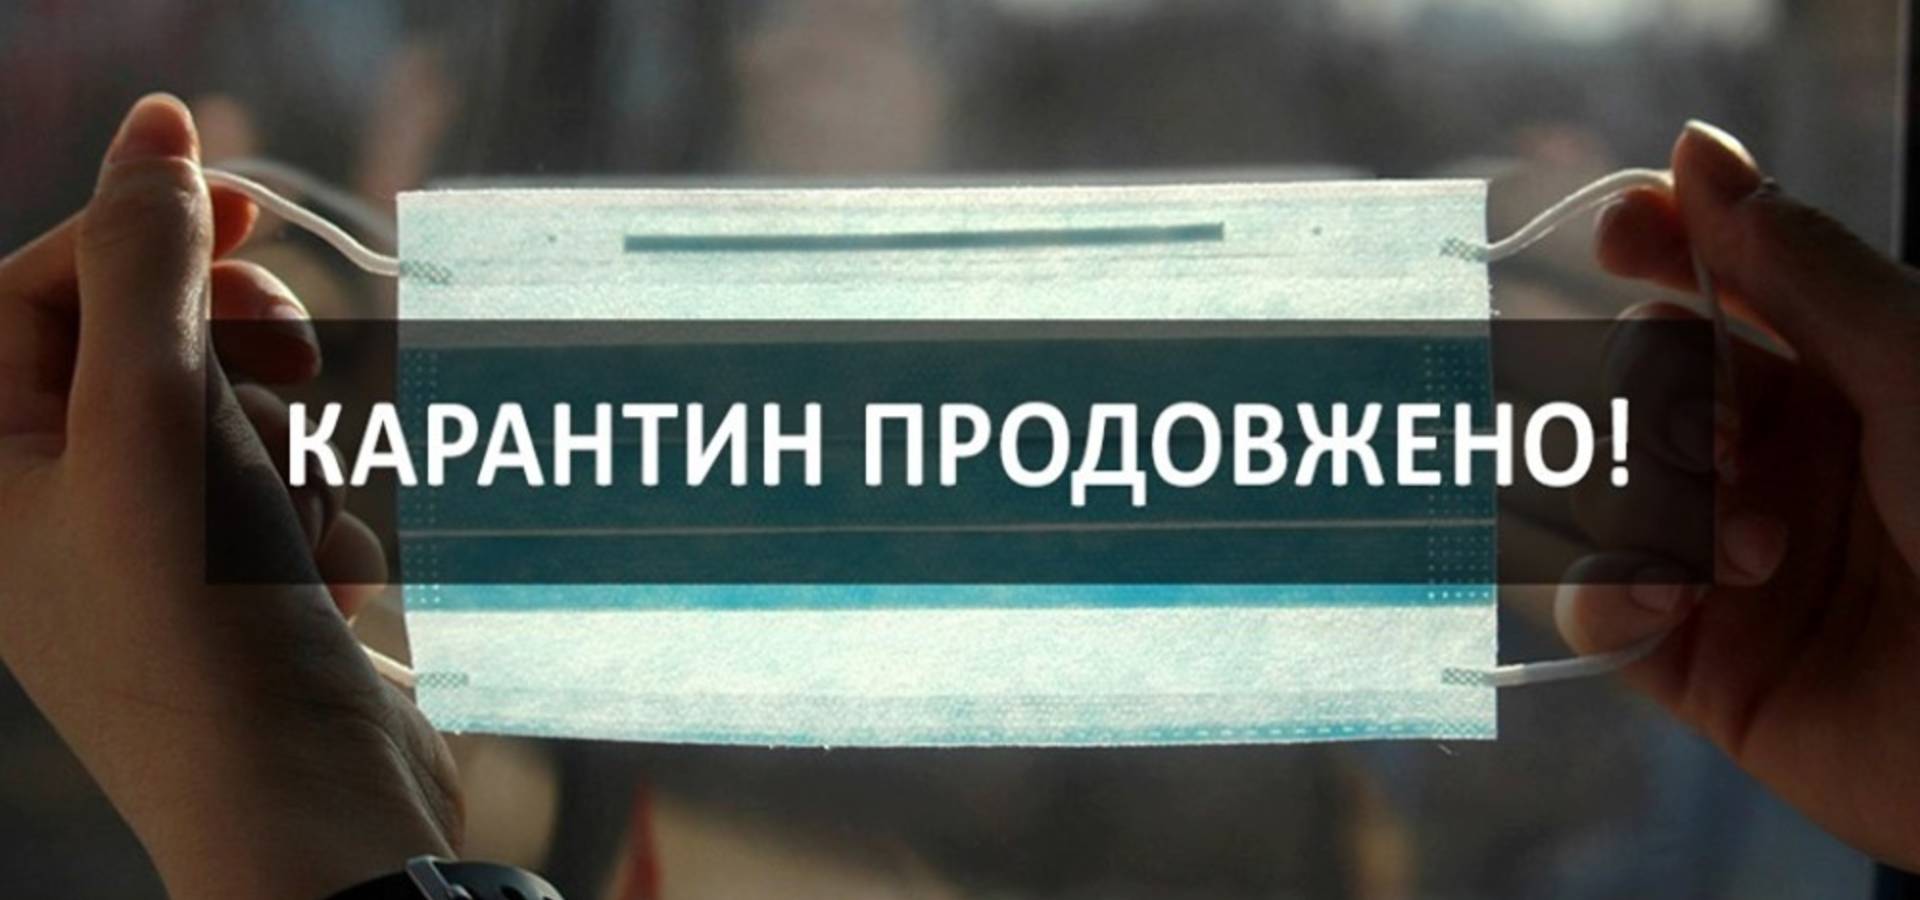 Карантин продовжать до 22 травня, - повідомив прем’єр-міністр України Денис Шмигаль